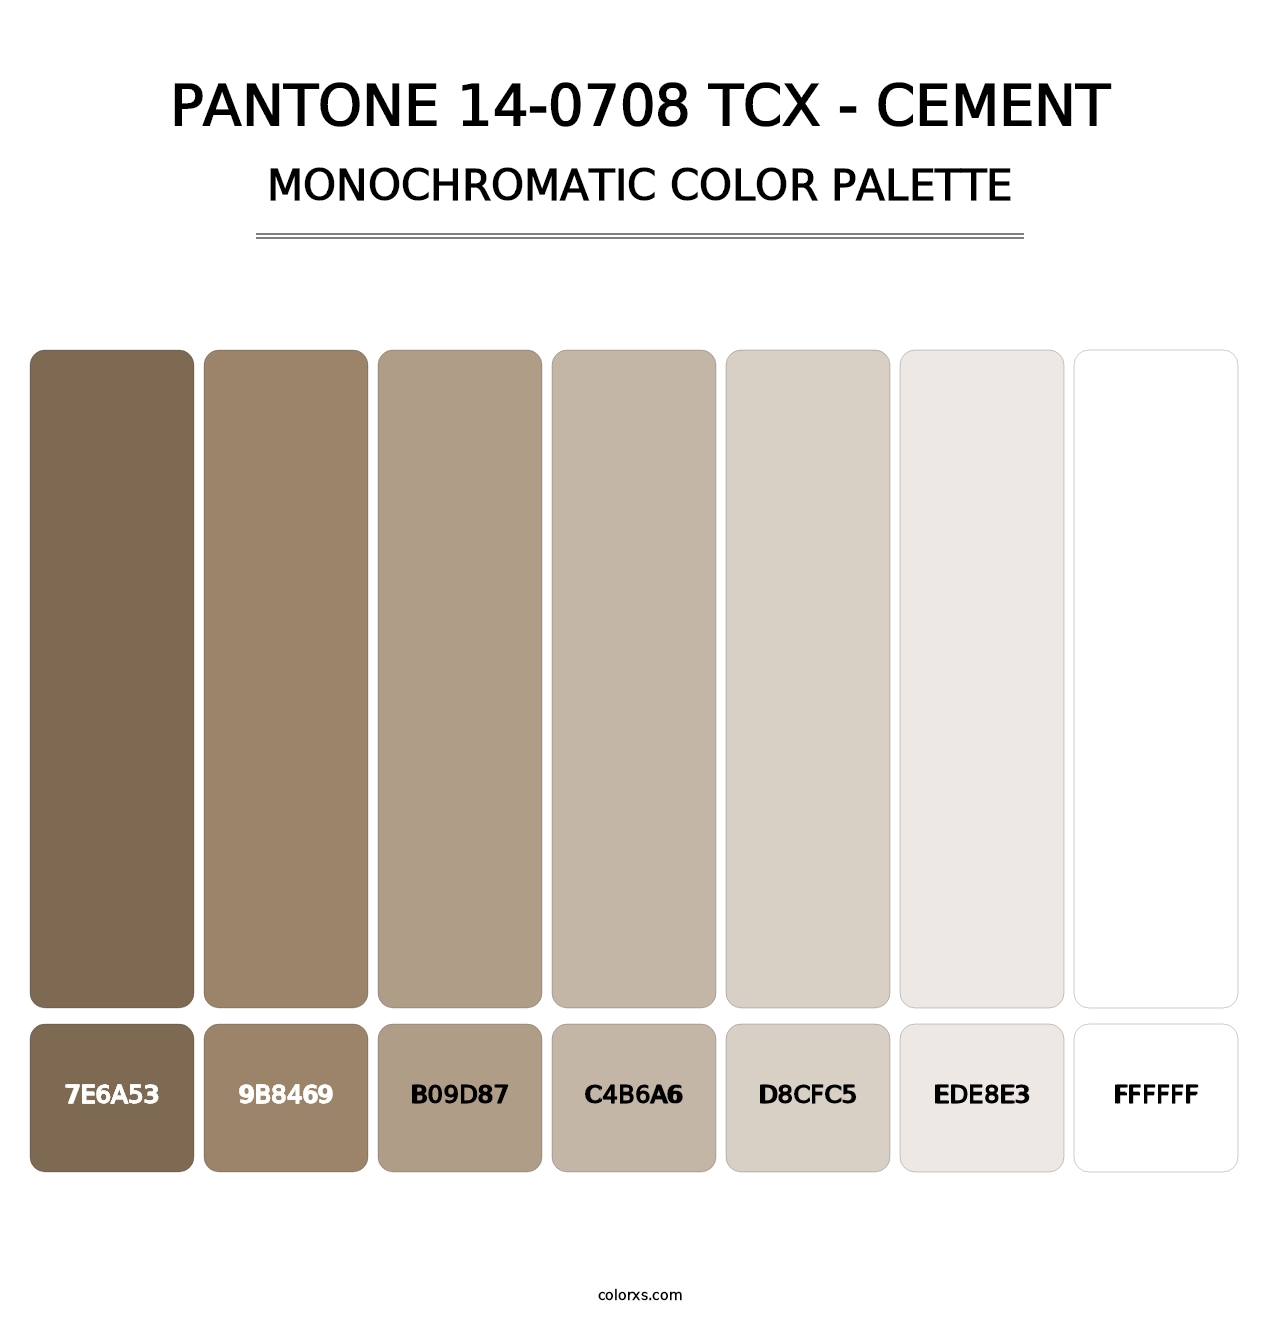 PANTONE 14-0708 TCX - Cement - Monochromatic Color Palette